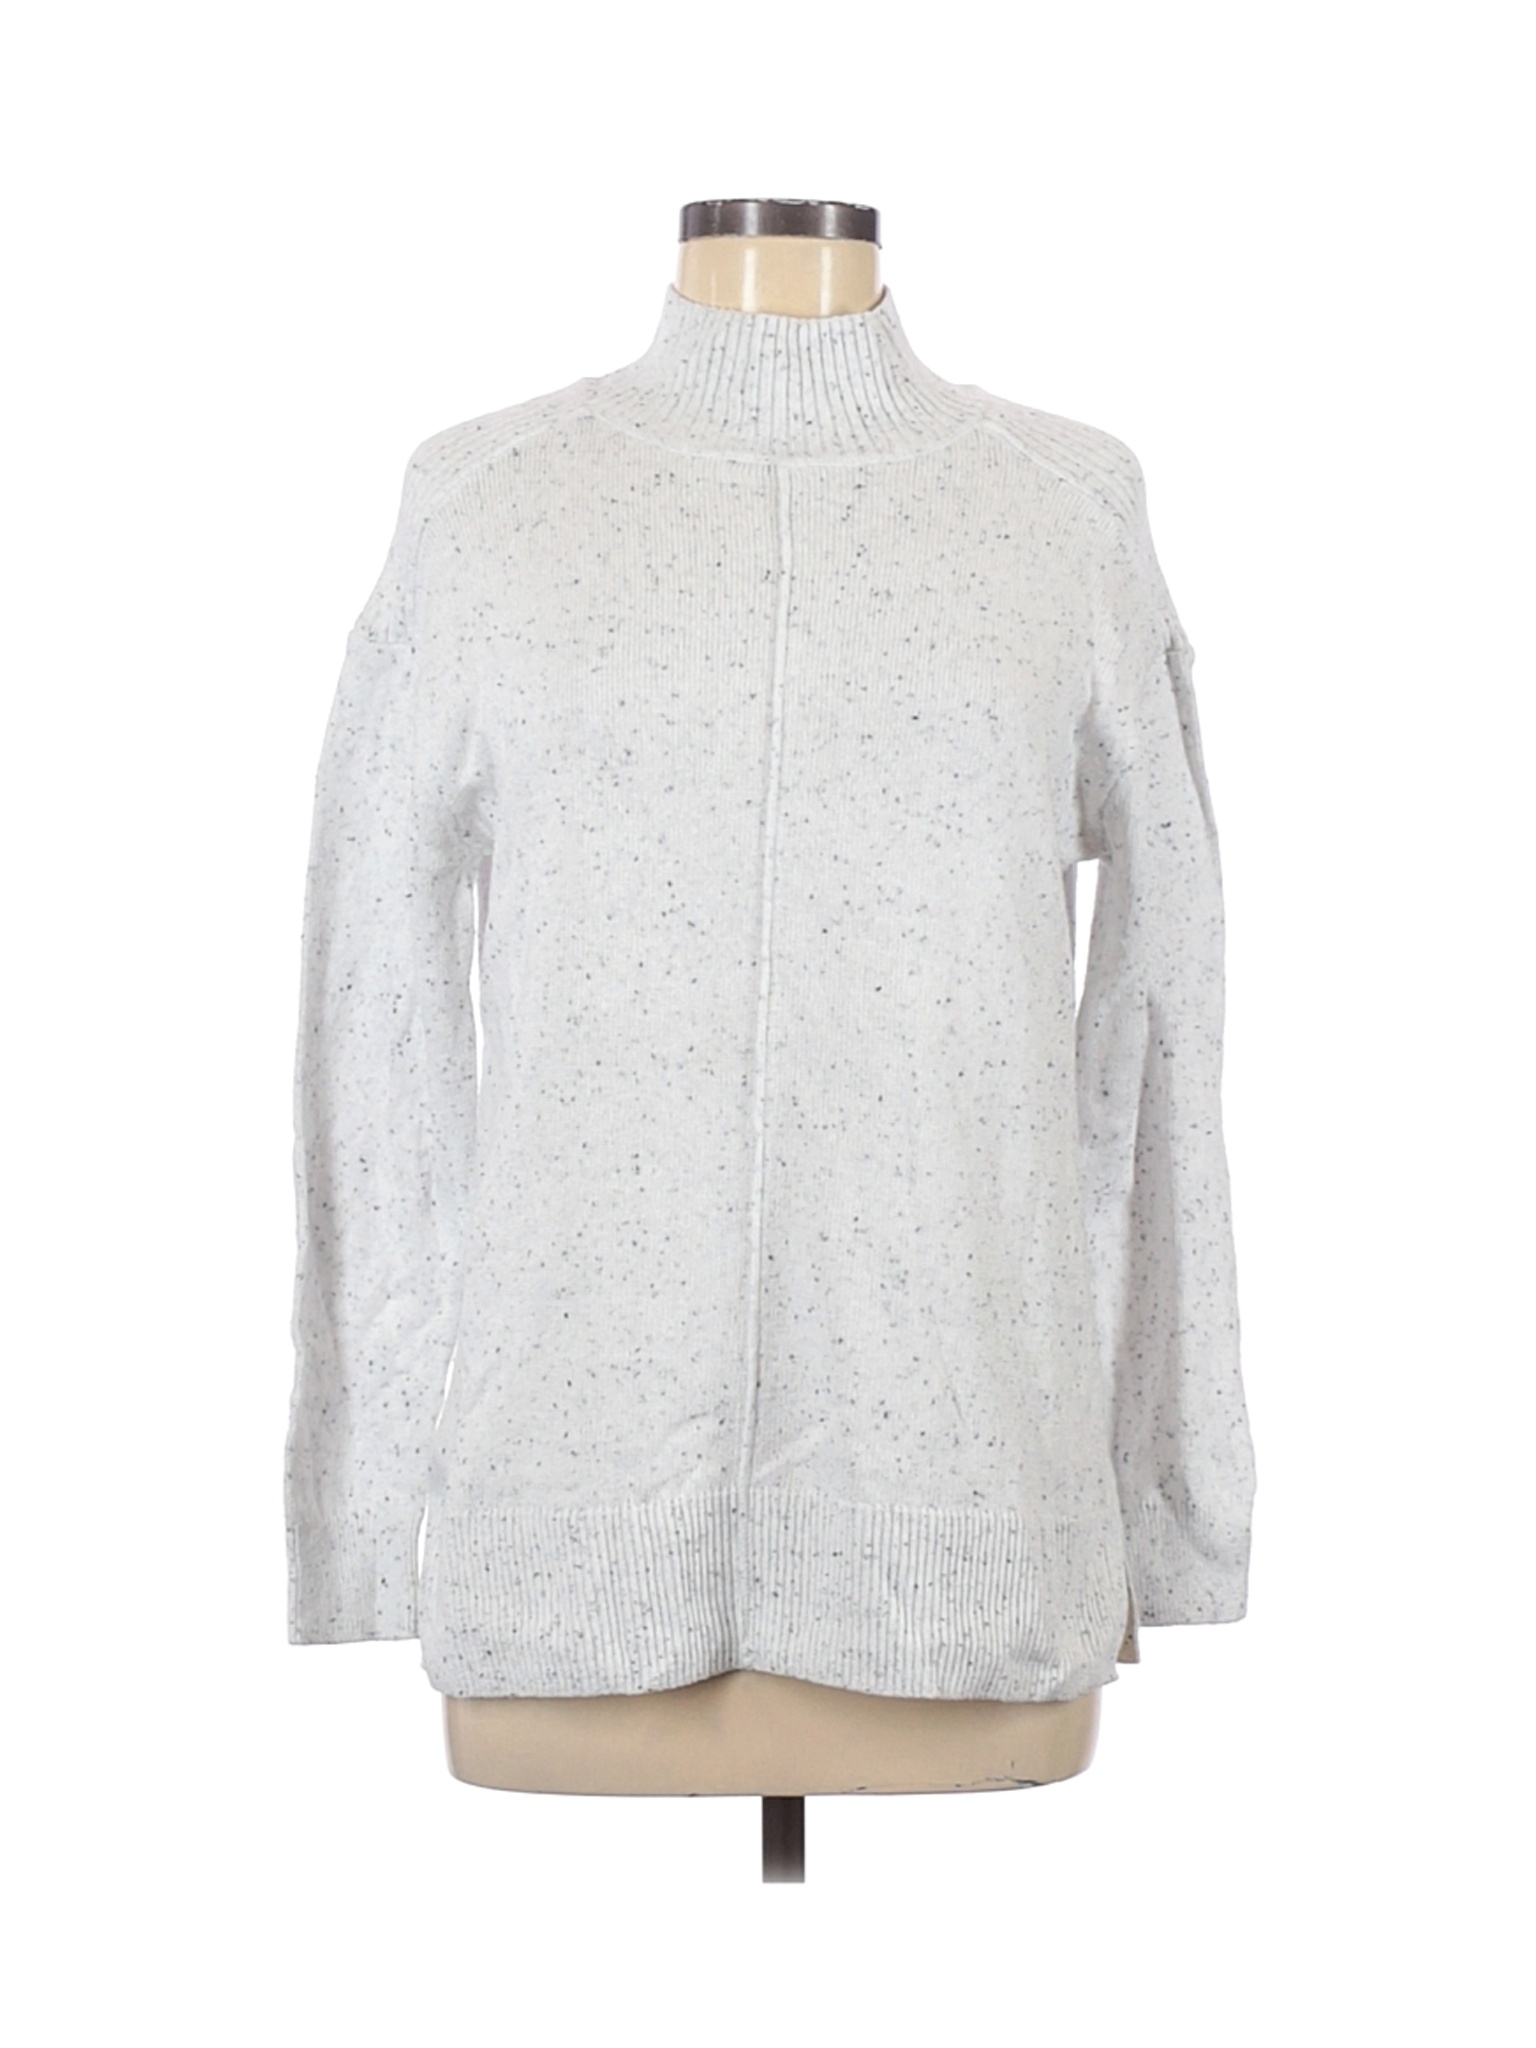 Karen Scott Women White Pullover Sweater M | eBay